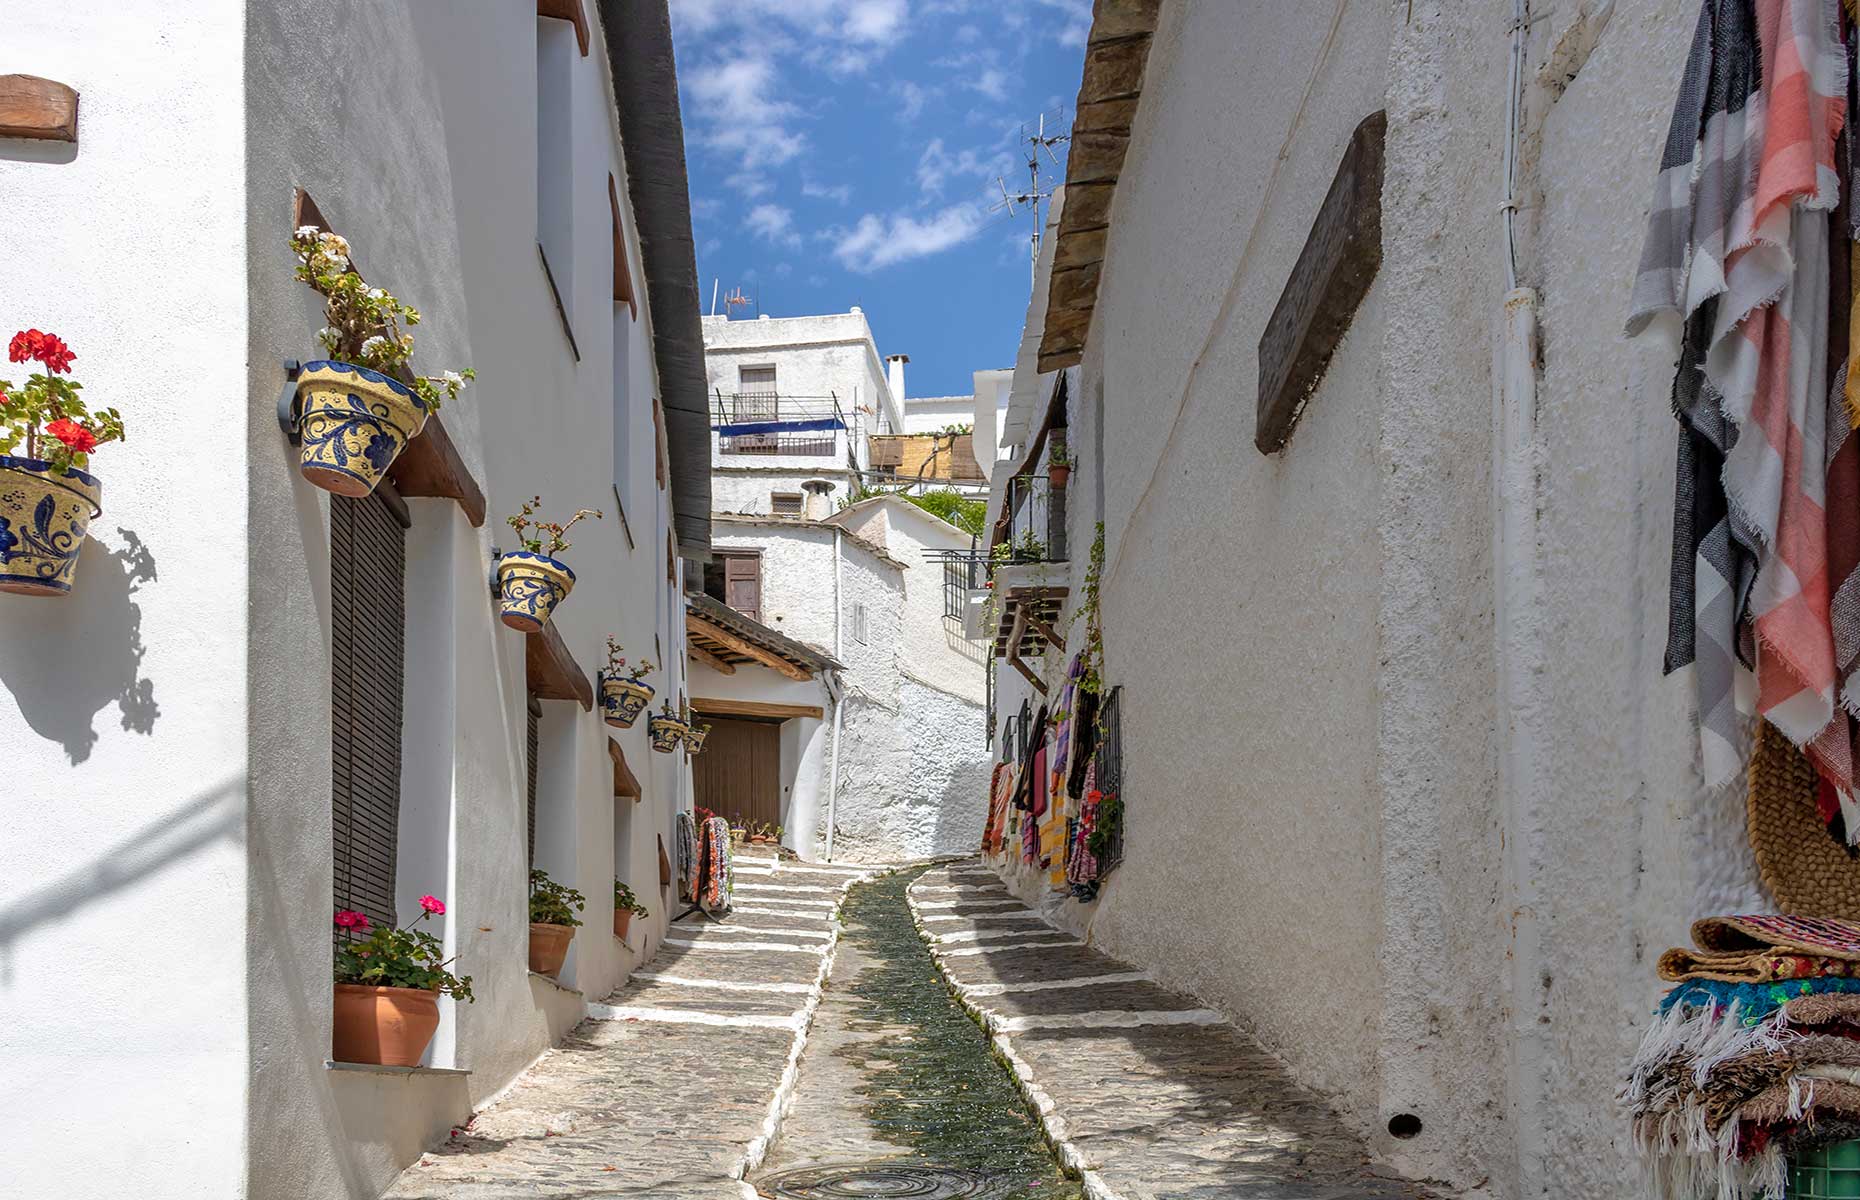 Alpujarras village (Image: Lucy Left/Shutterstock)